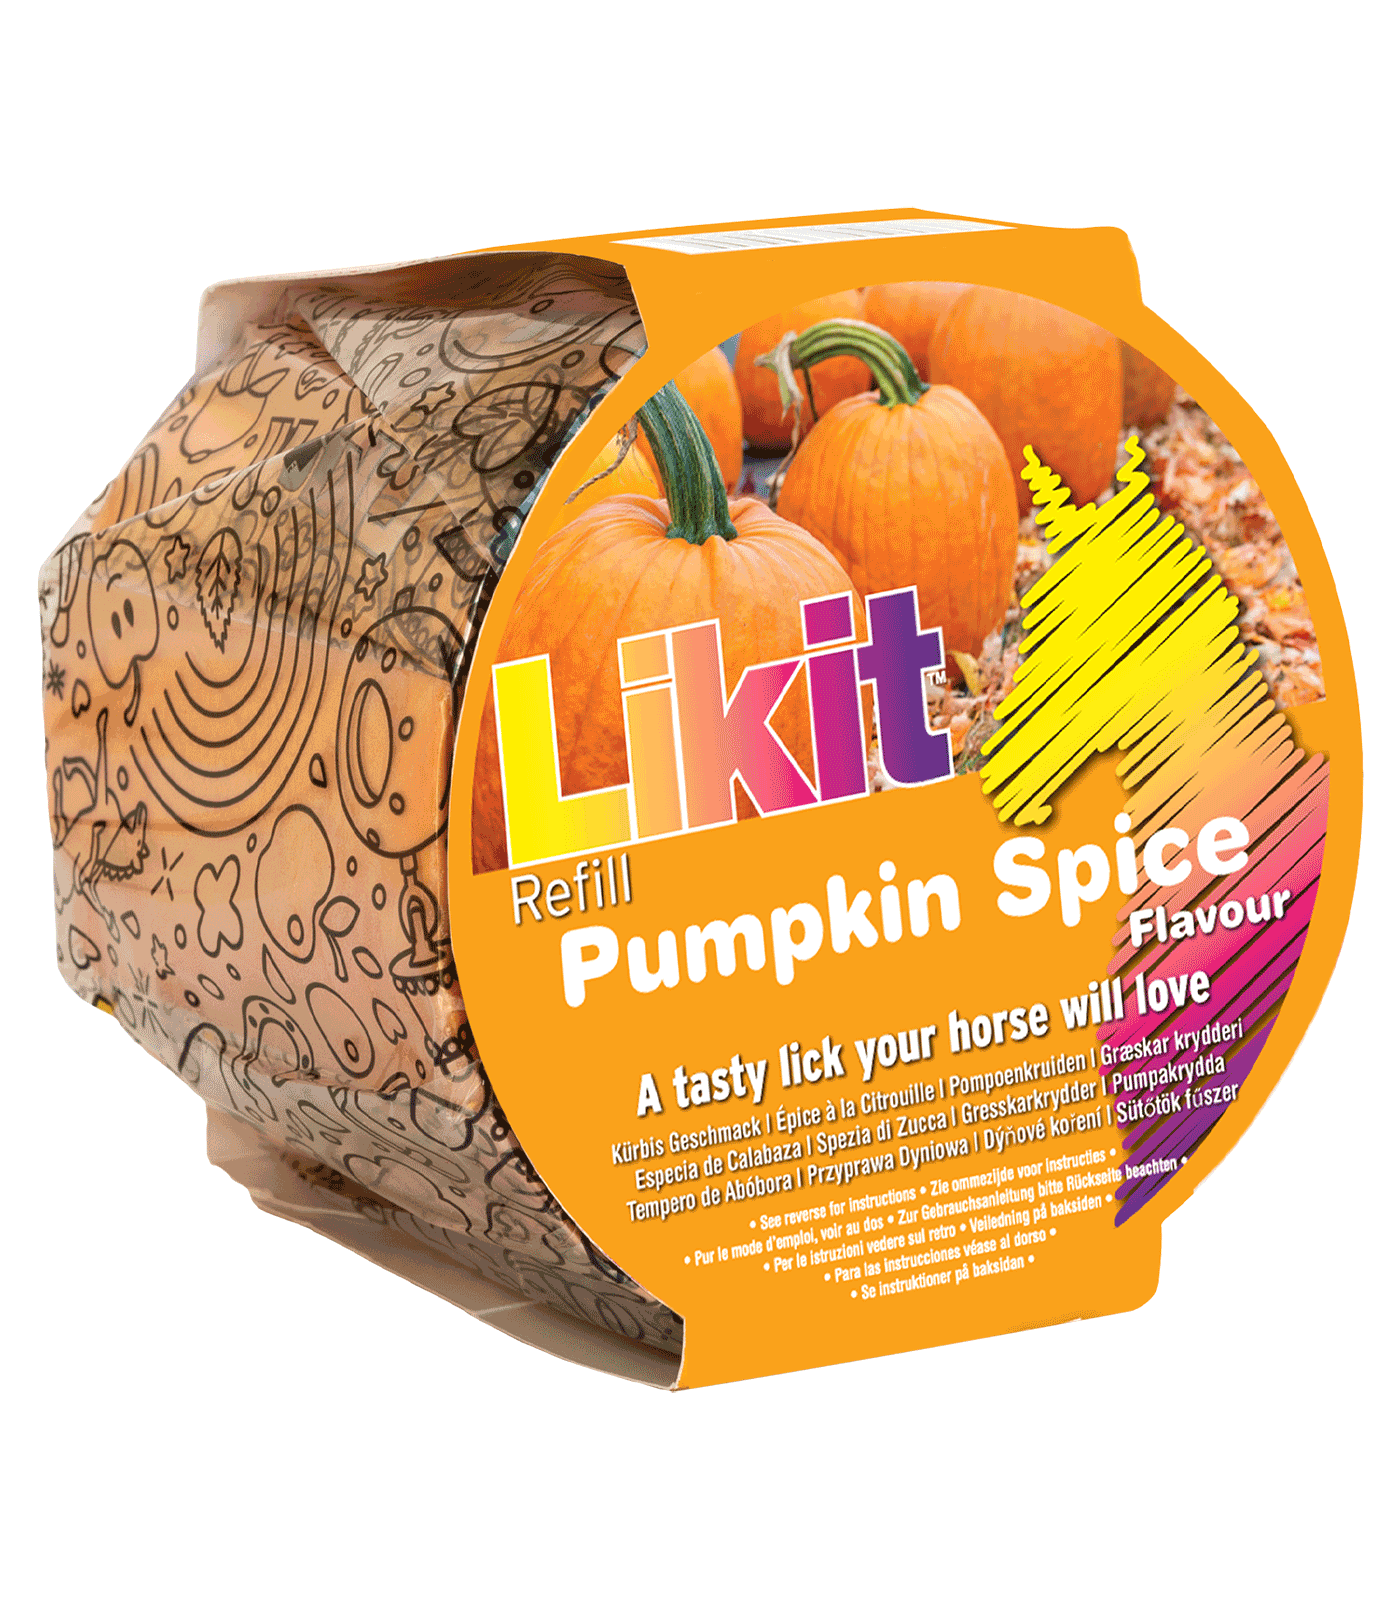 Likit Pumpkin Spice Big Refill